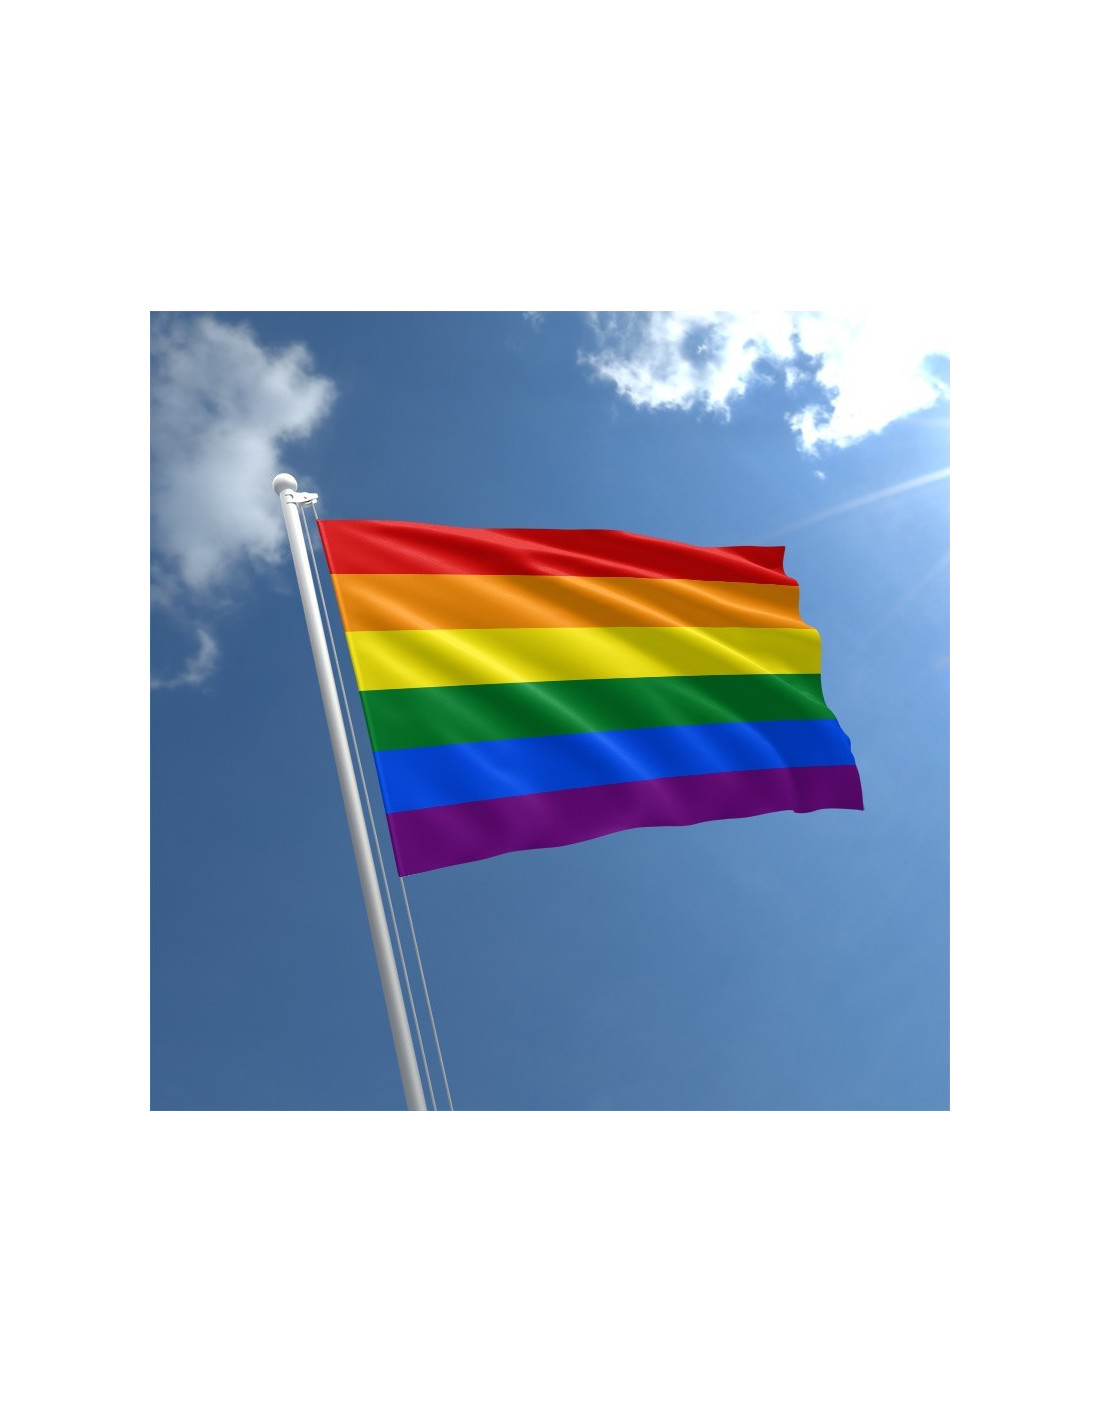 rencontre de gay flag a LHay les Roses